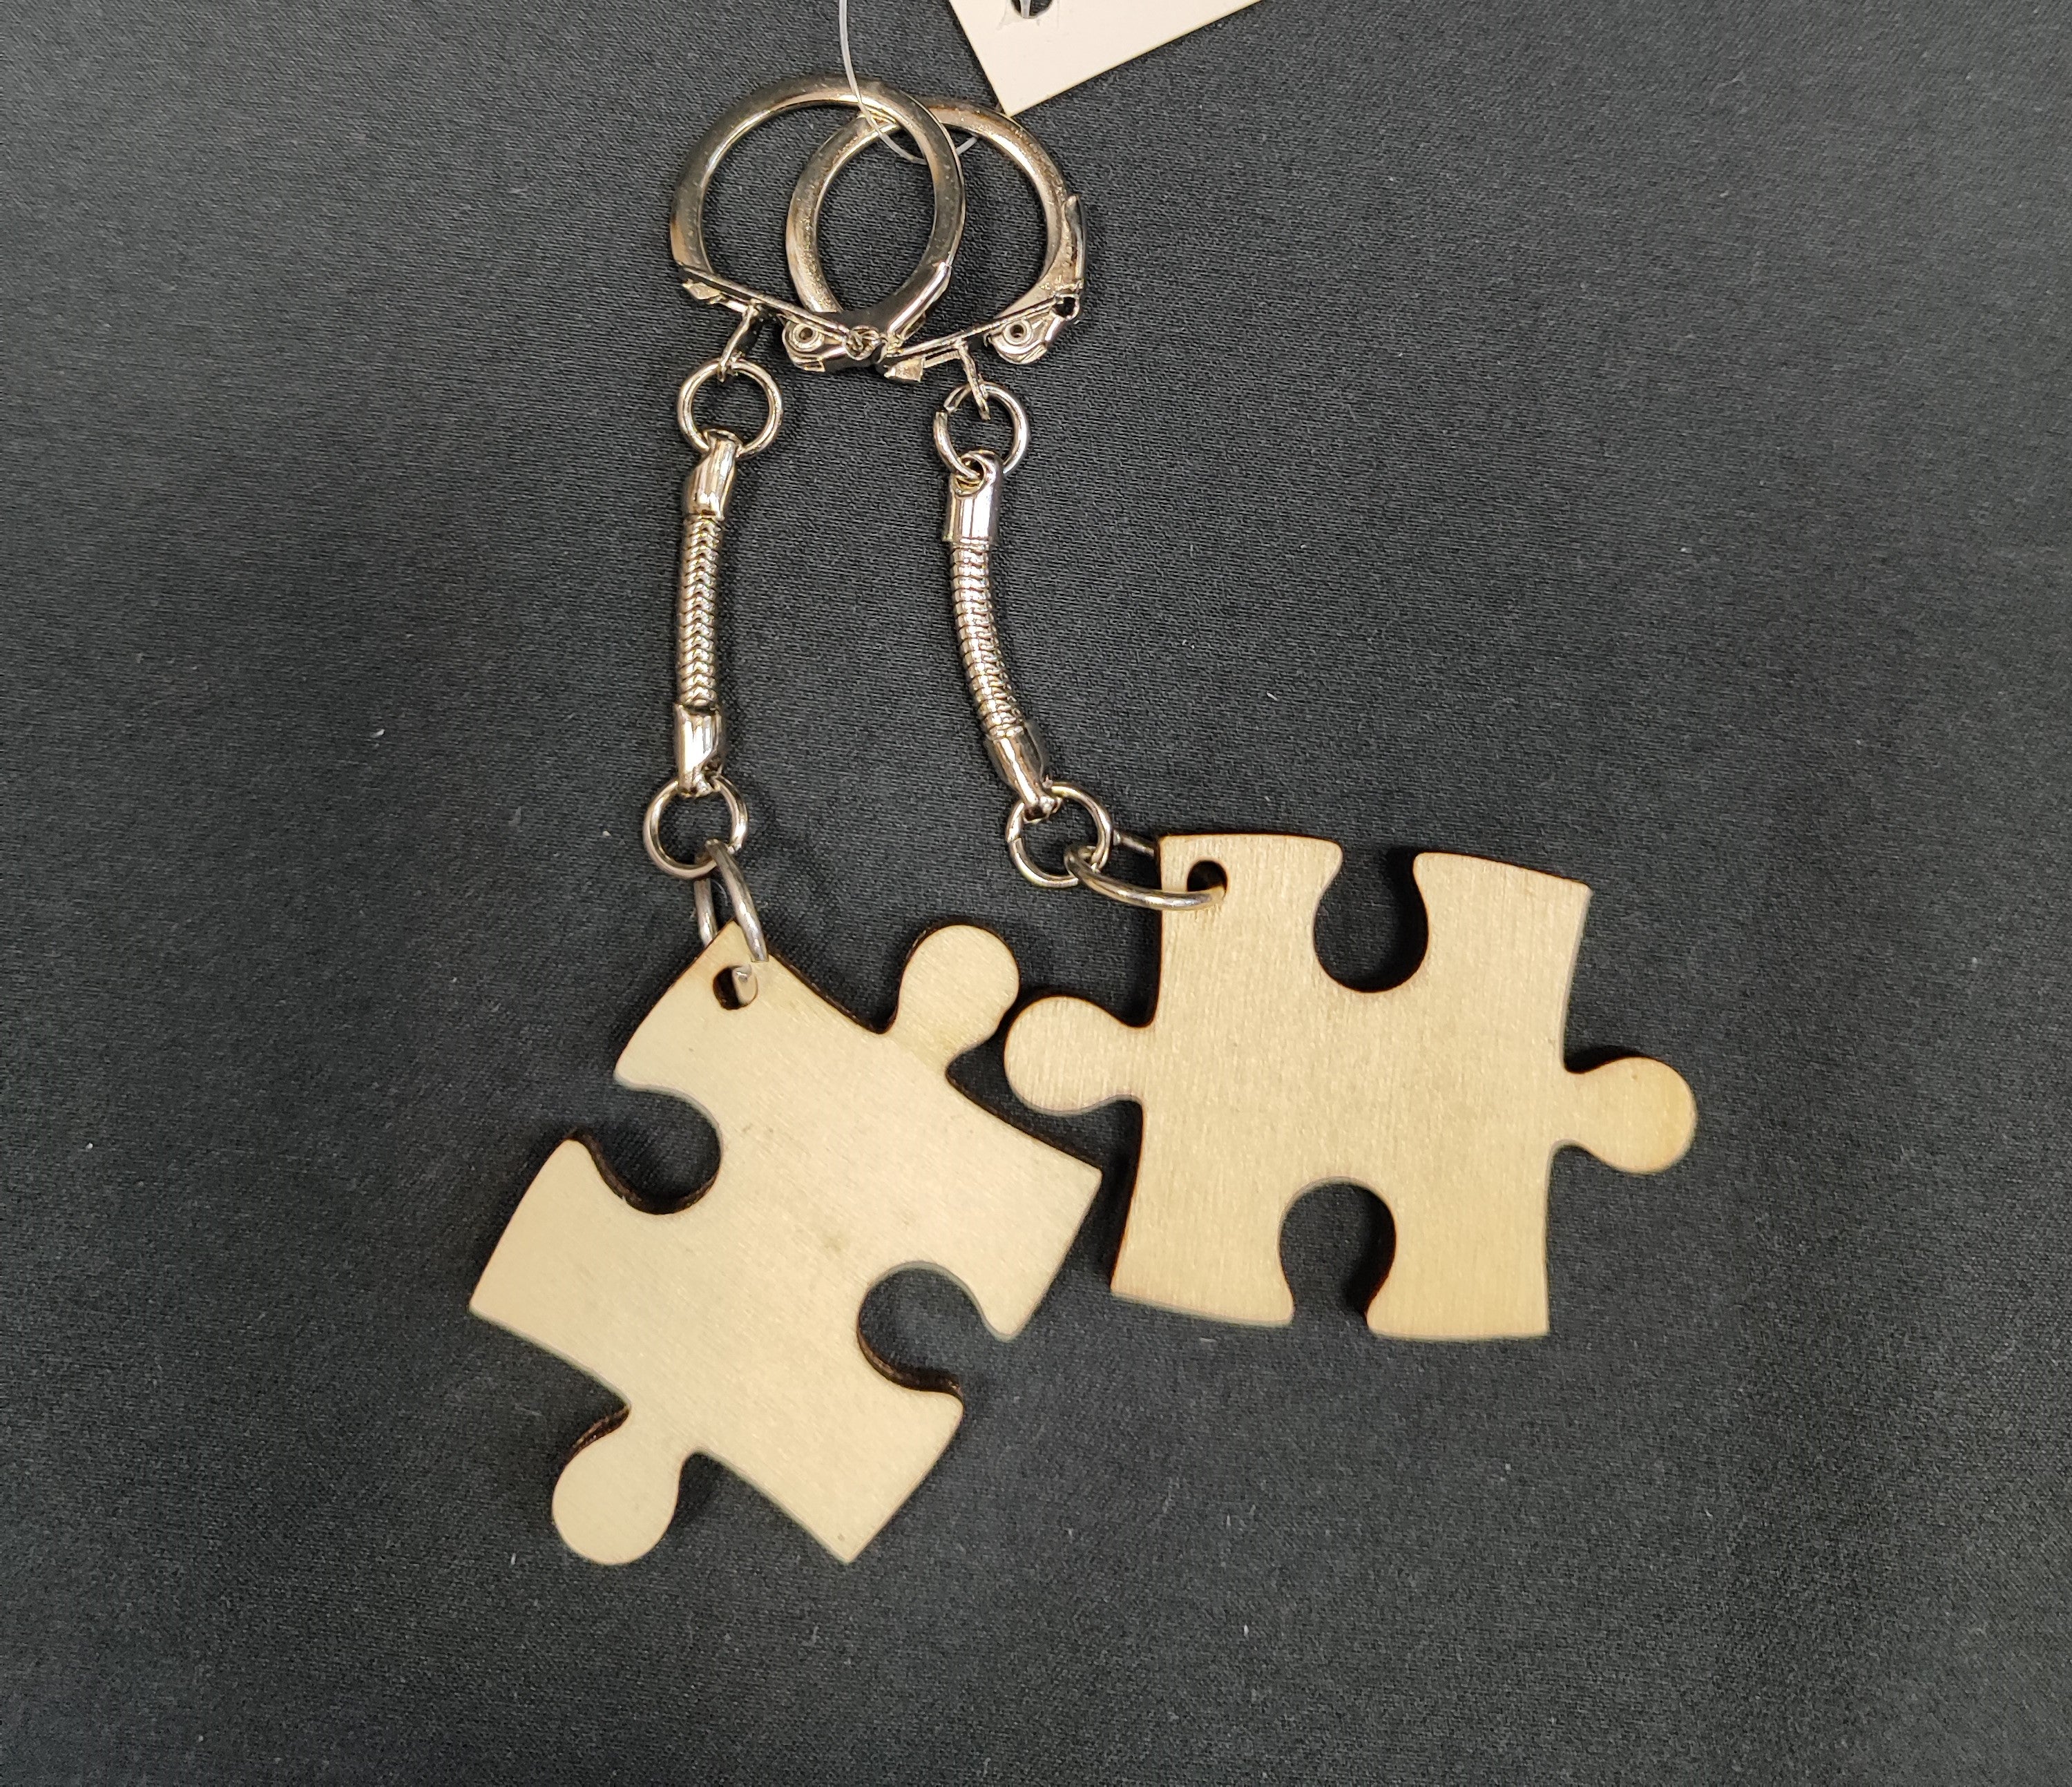 Pack de 2 llaveros con forma de Puzzle, ultimas unidades